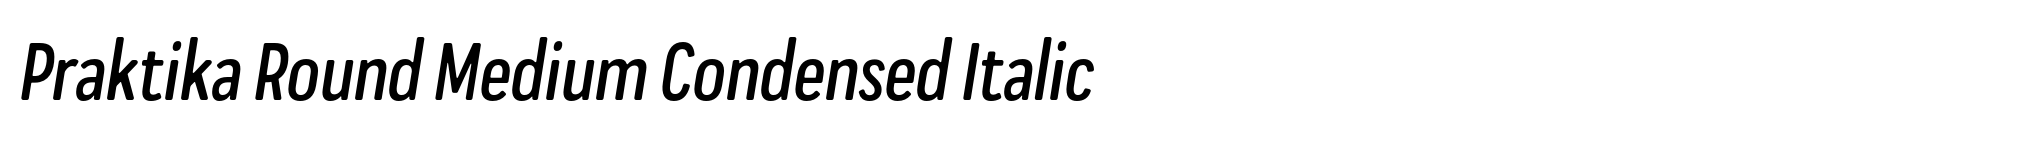 Praktika Round Medium Condensed Italic image